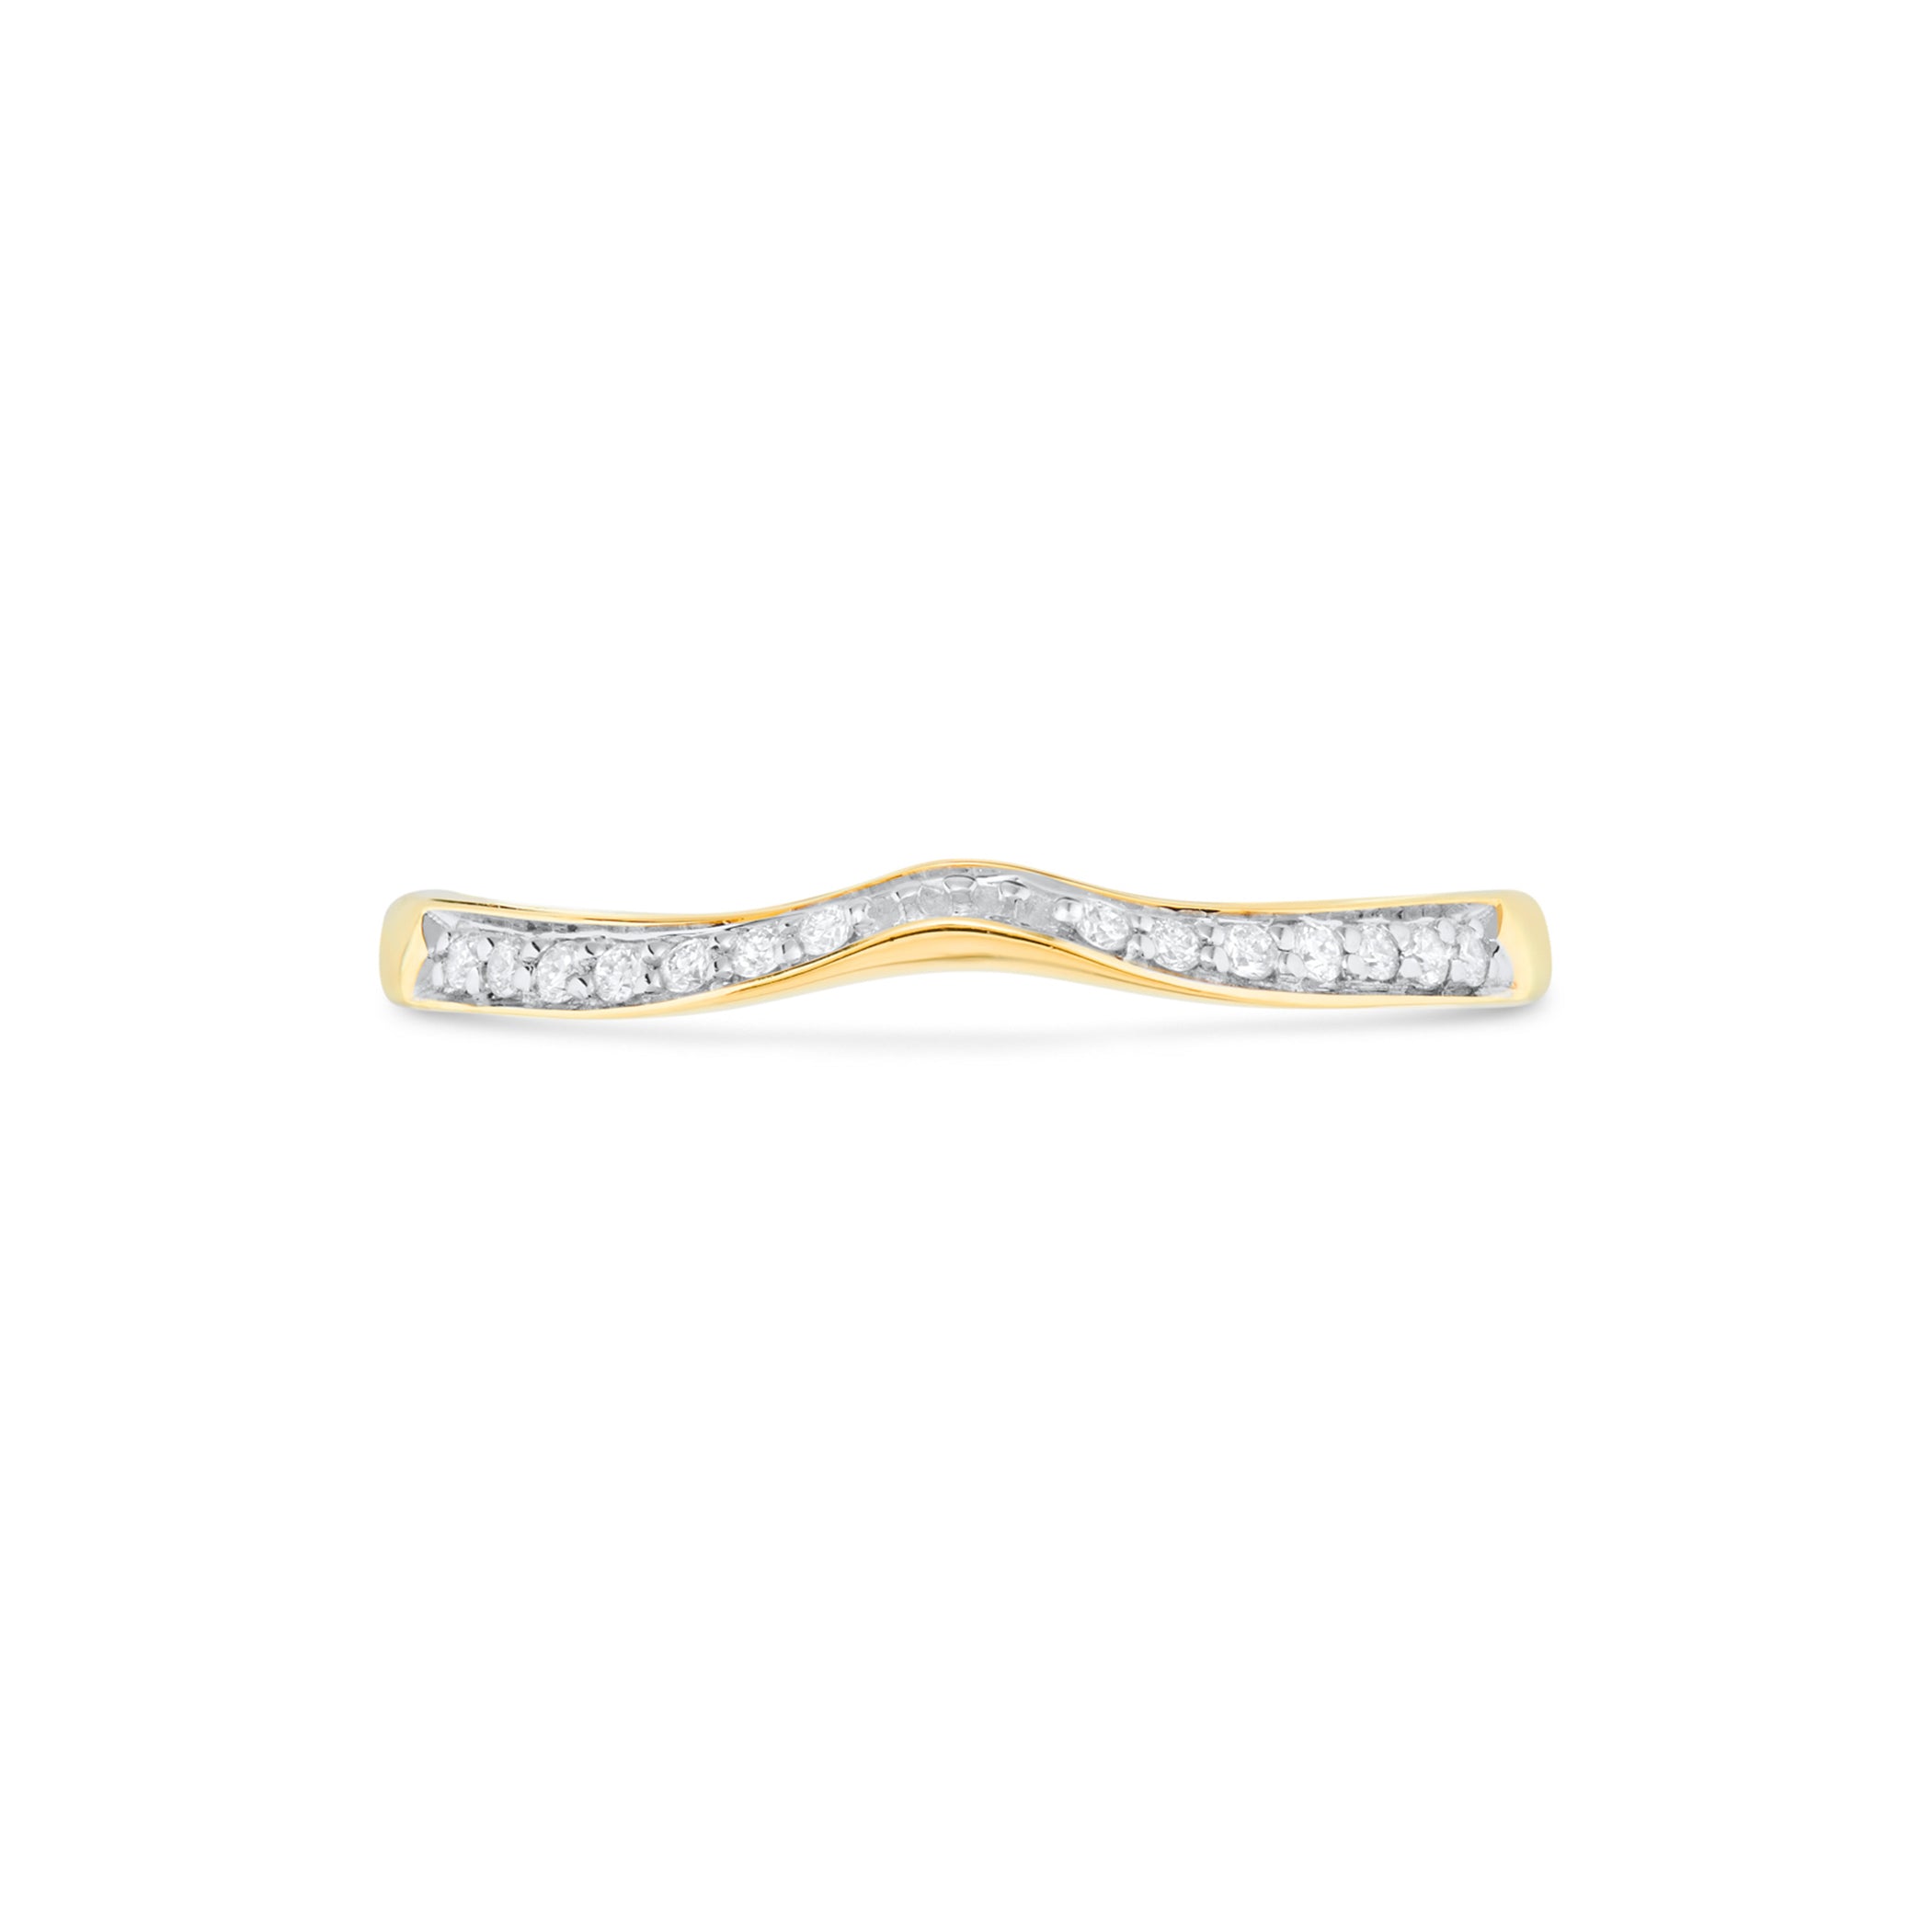 Element Bespoke Jewellery Diamond Set Shaped Wedding Ring 18ct Yellow Gold